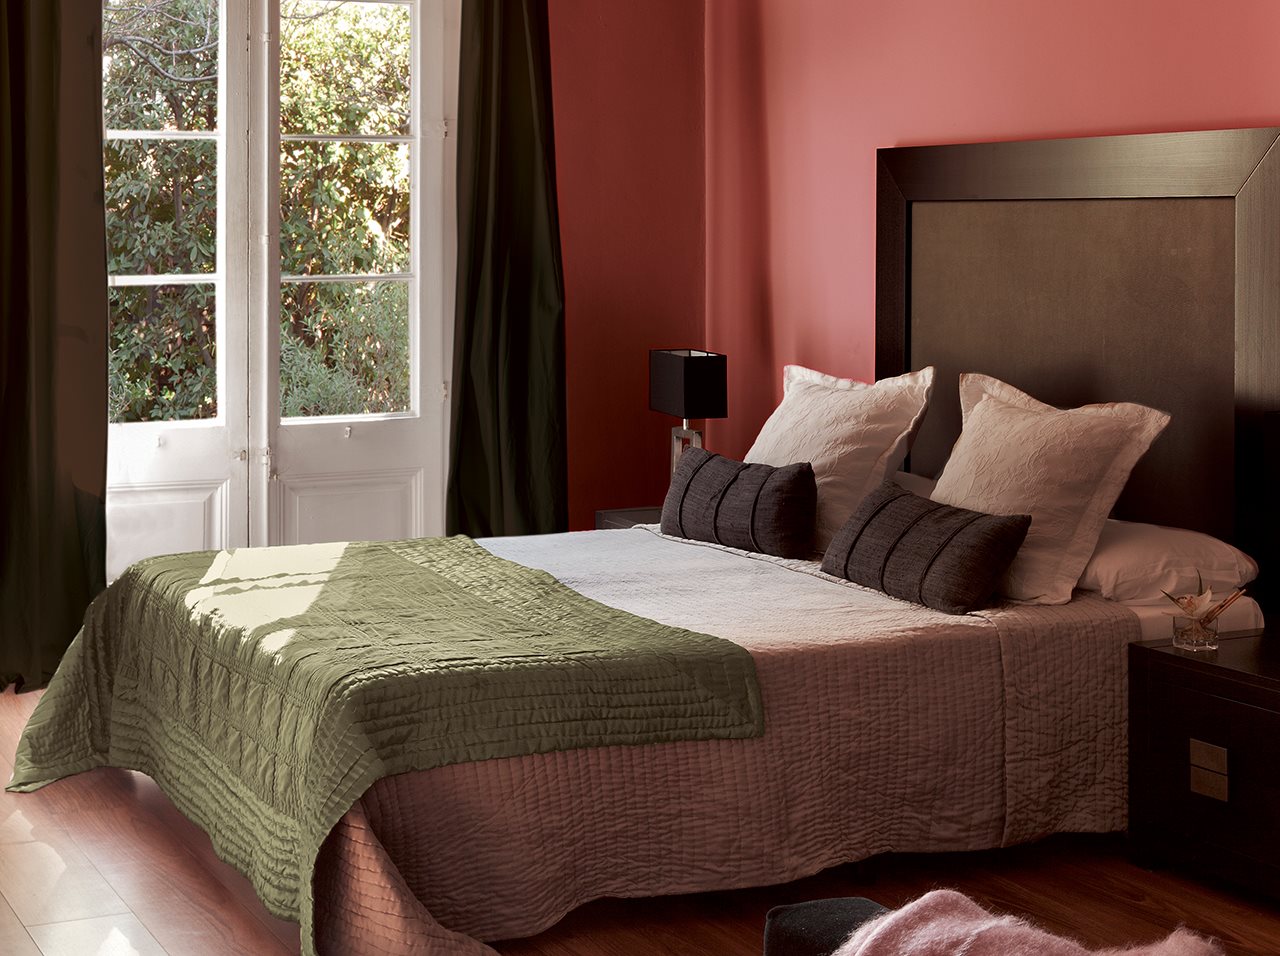 Un dormitorio con cinco estilos diferentes. ¿Cuál te gusta más?